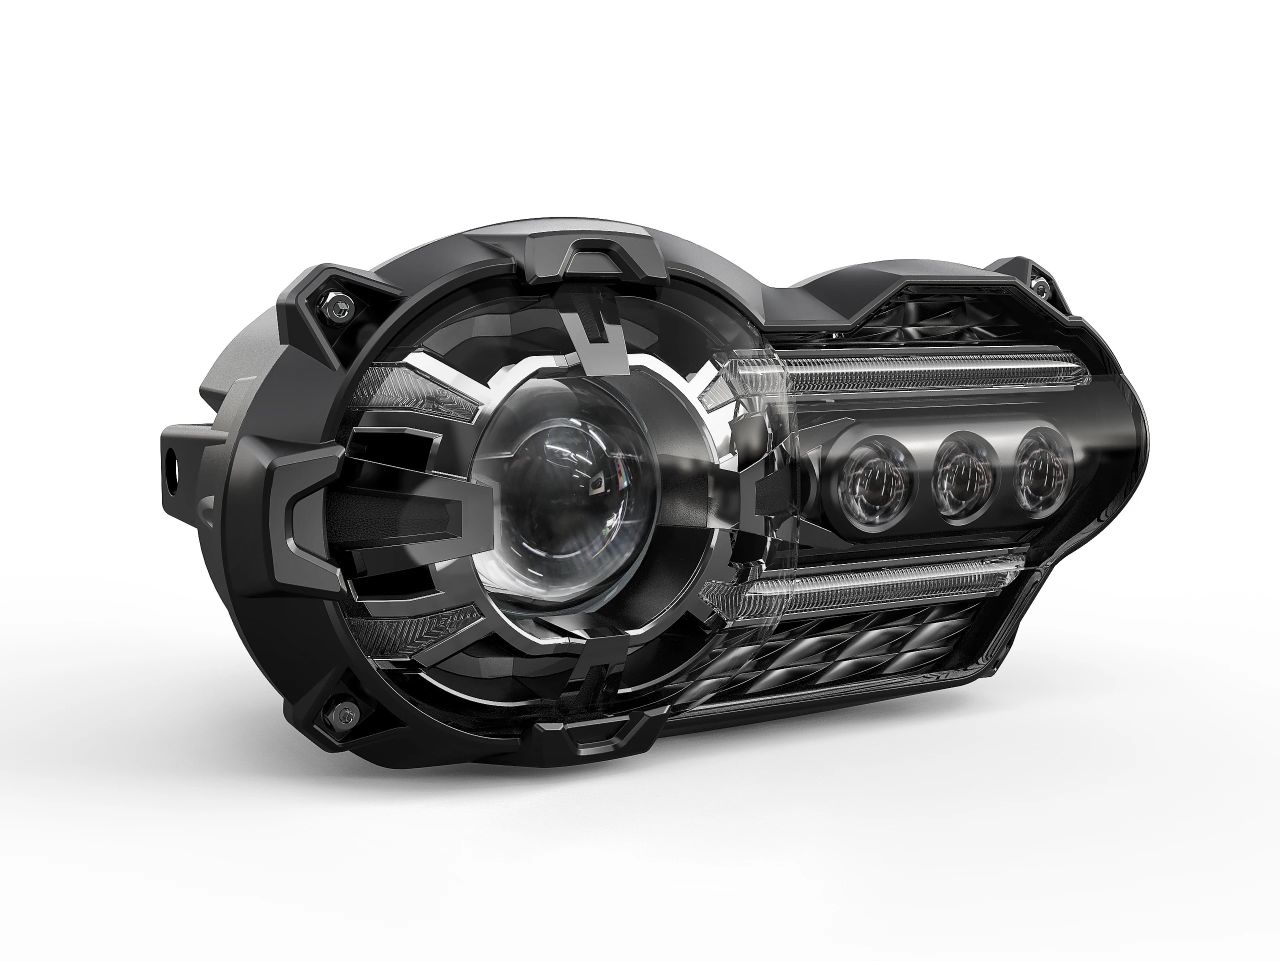 PowerBeam BMW R 1200 GS LED Scheinwerfer mit ECE-Zulassung und integrierten Widerständen